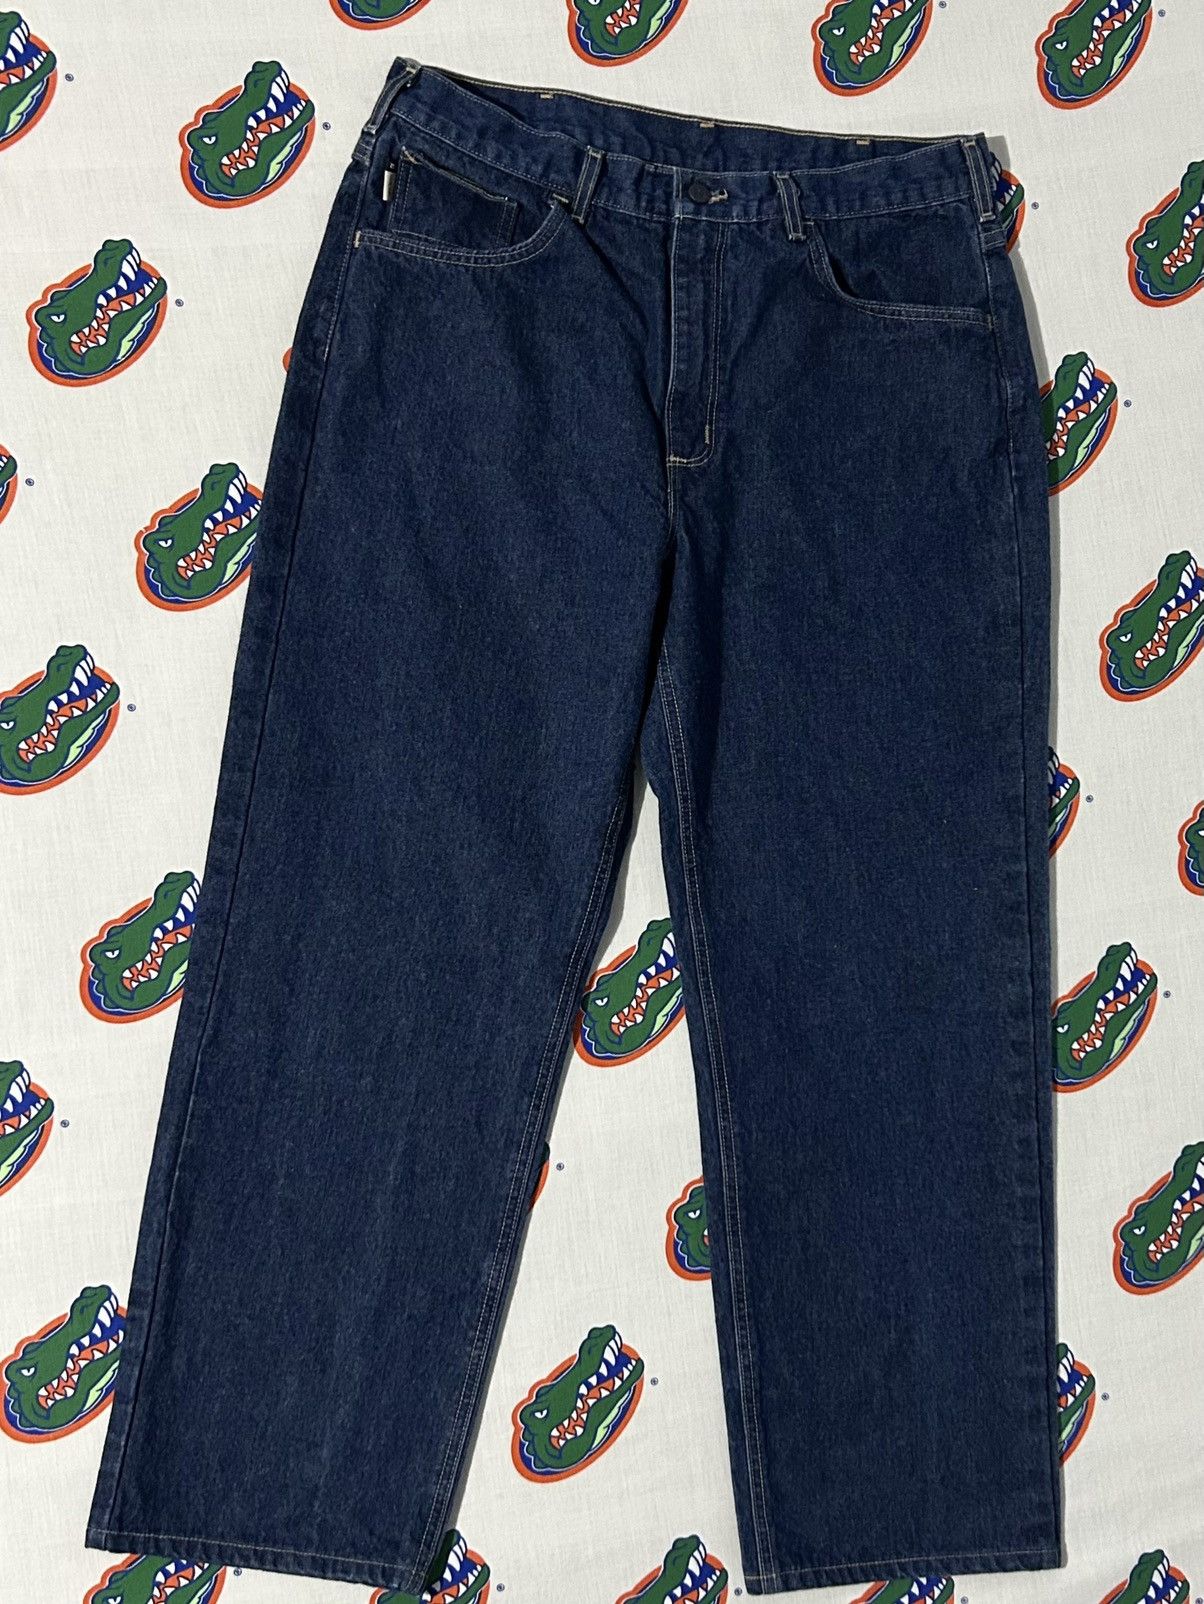 Vintage Mens Vintage Carhartt Fire Resistant Denim Jeans 36 x 30 Size US 36 / EU 52 - 4 Thumbnail